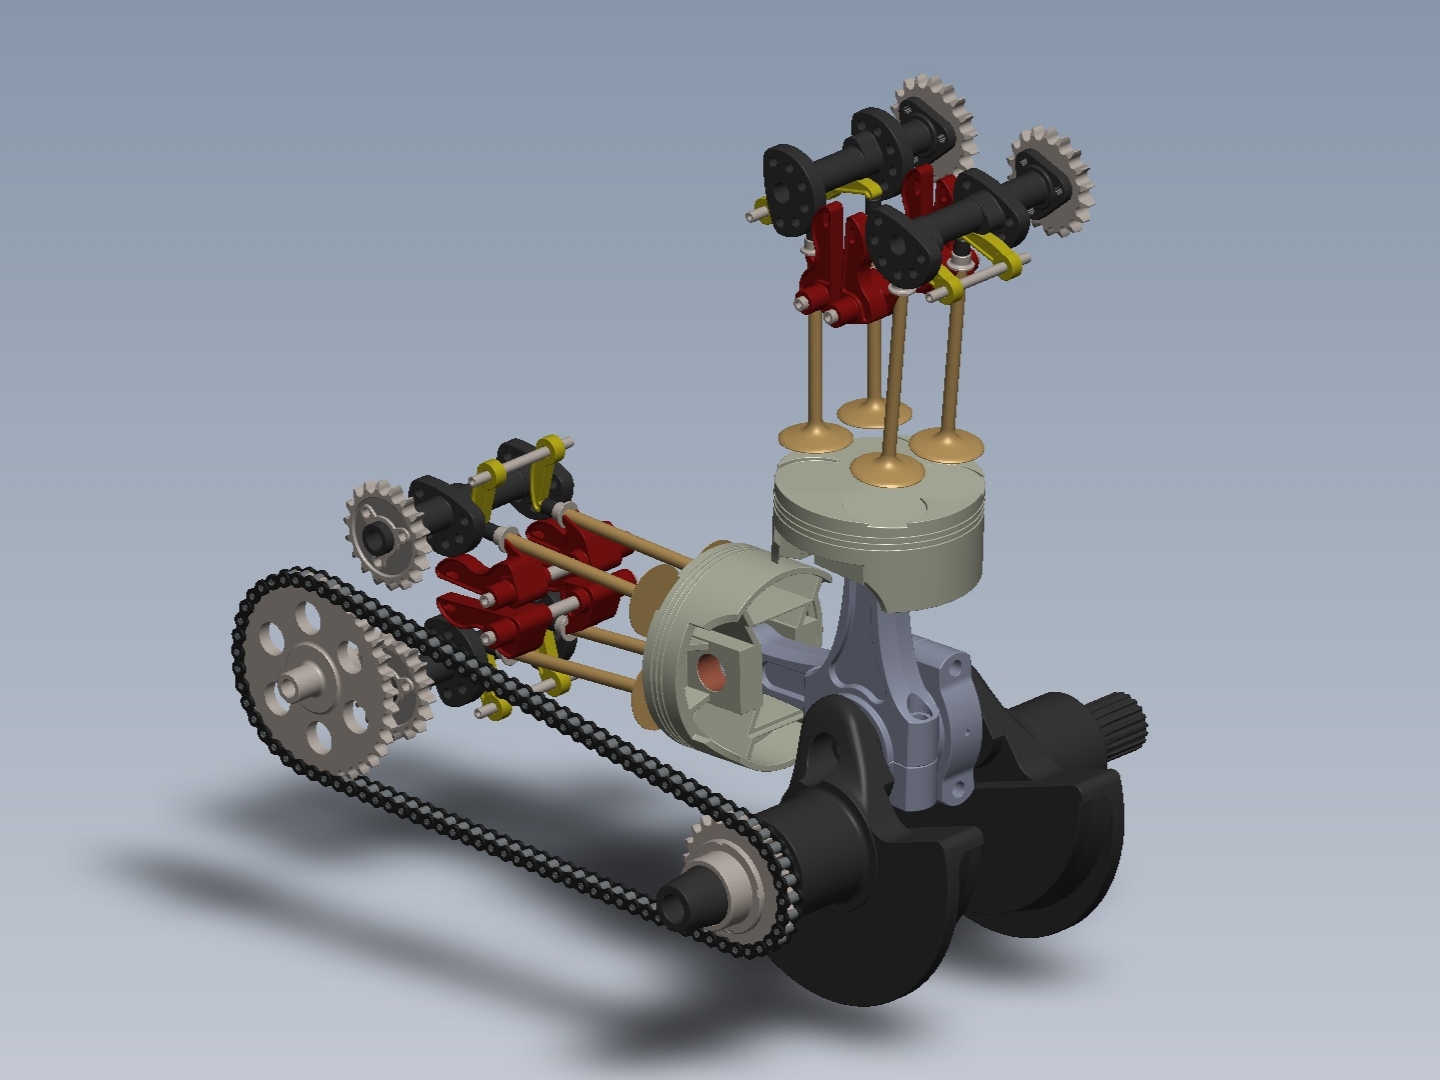 مدل سه بعدی موتور دو سیلندر خورجینی